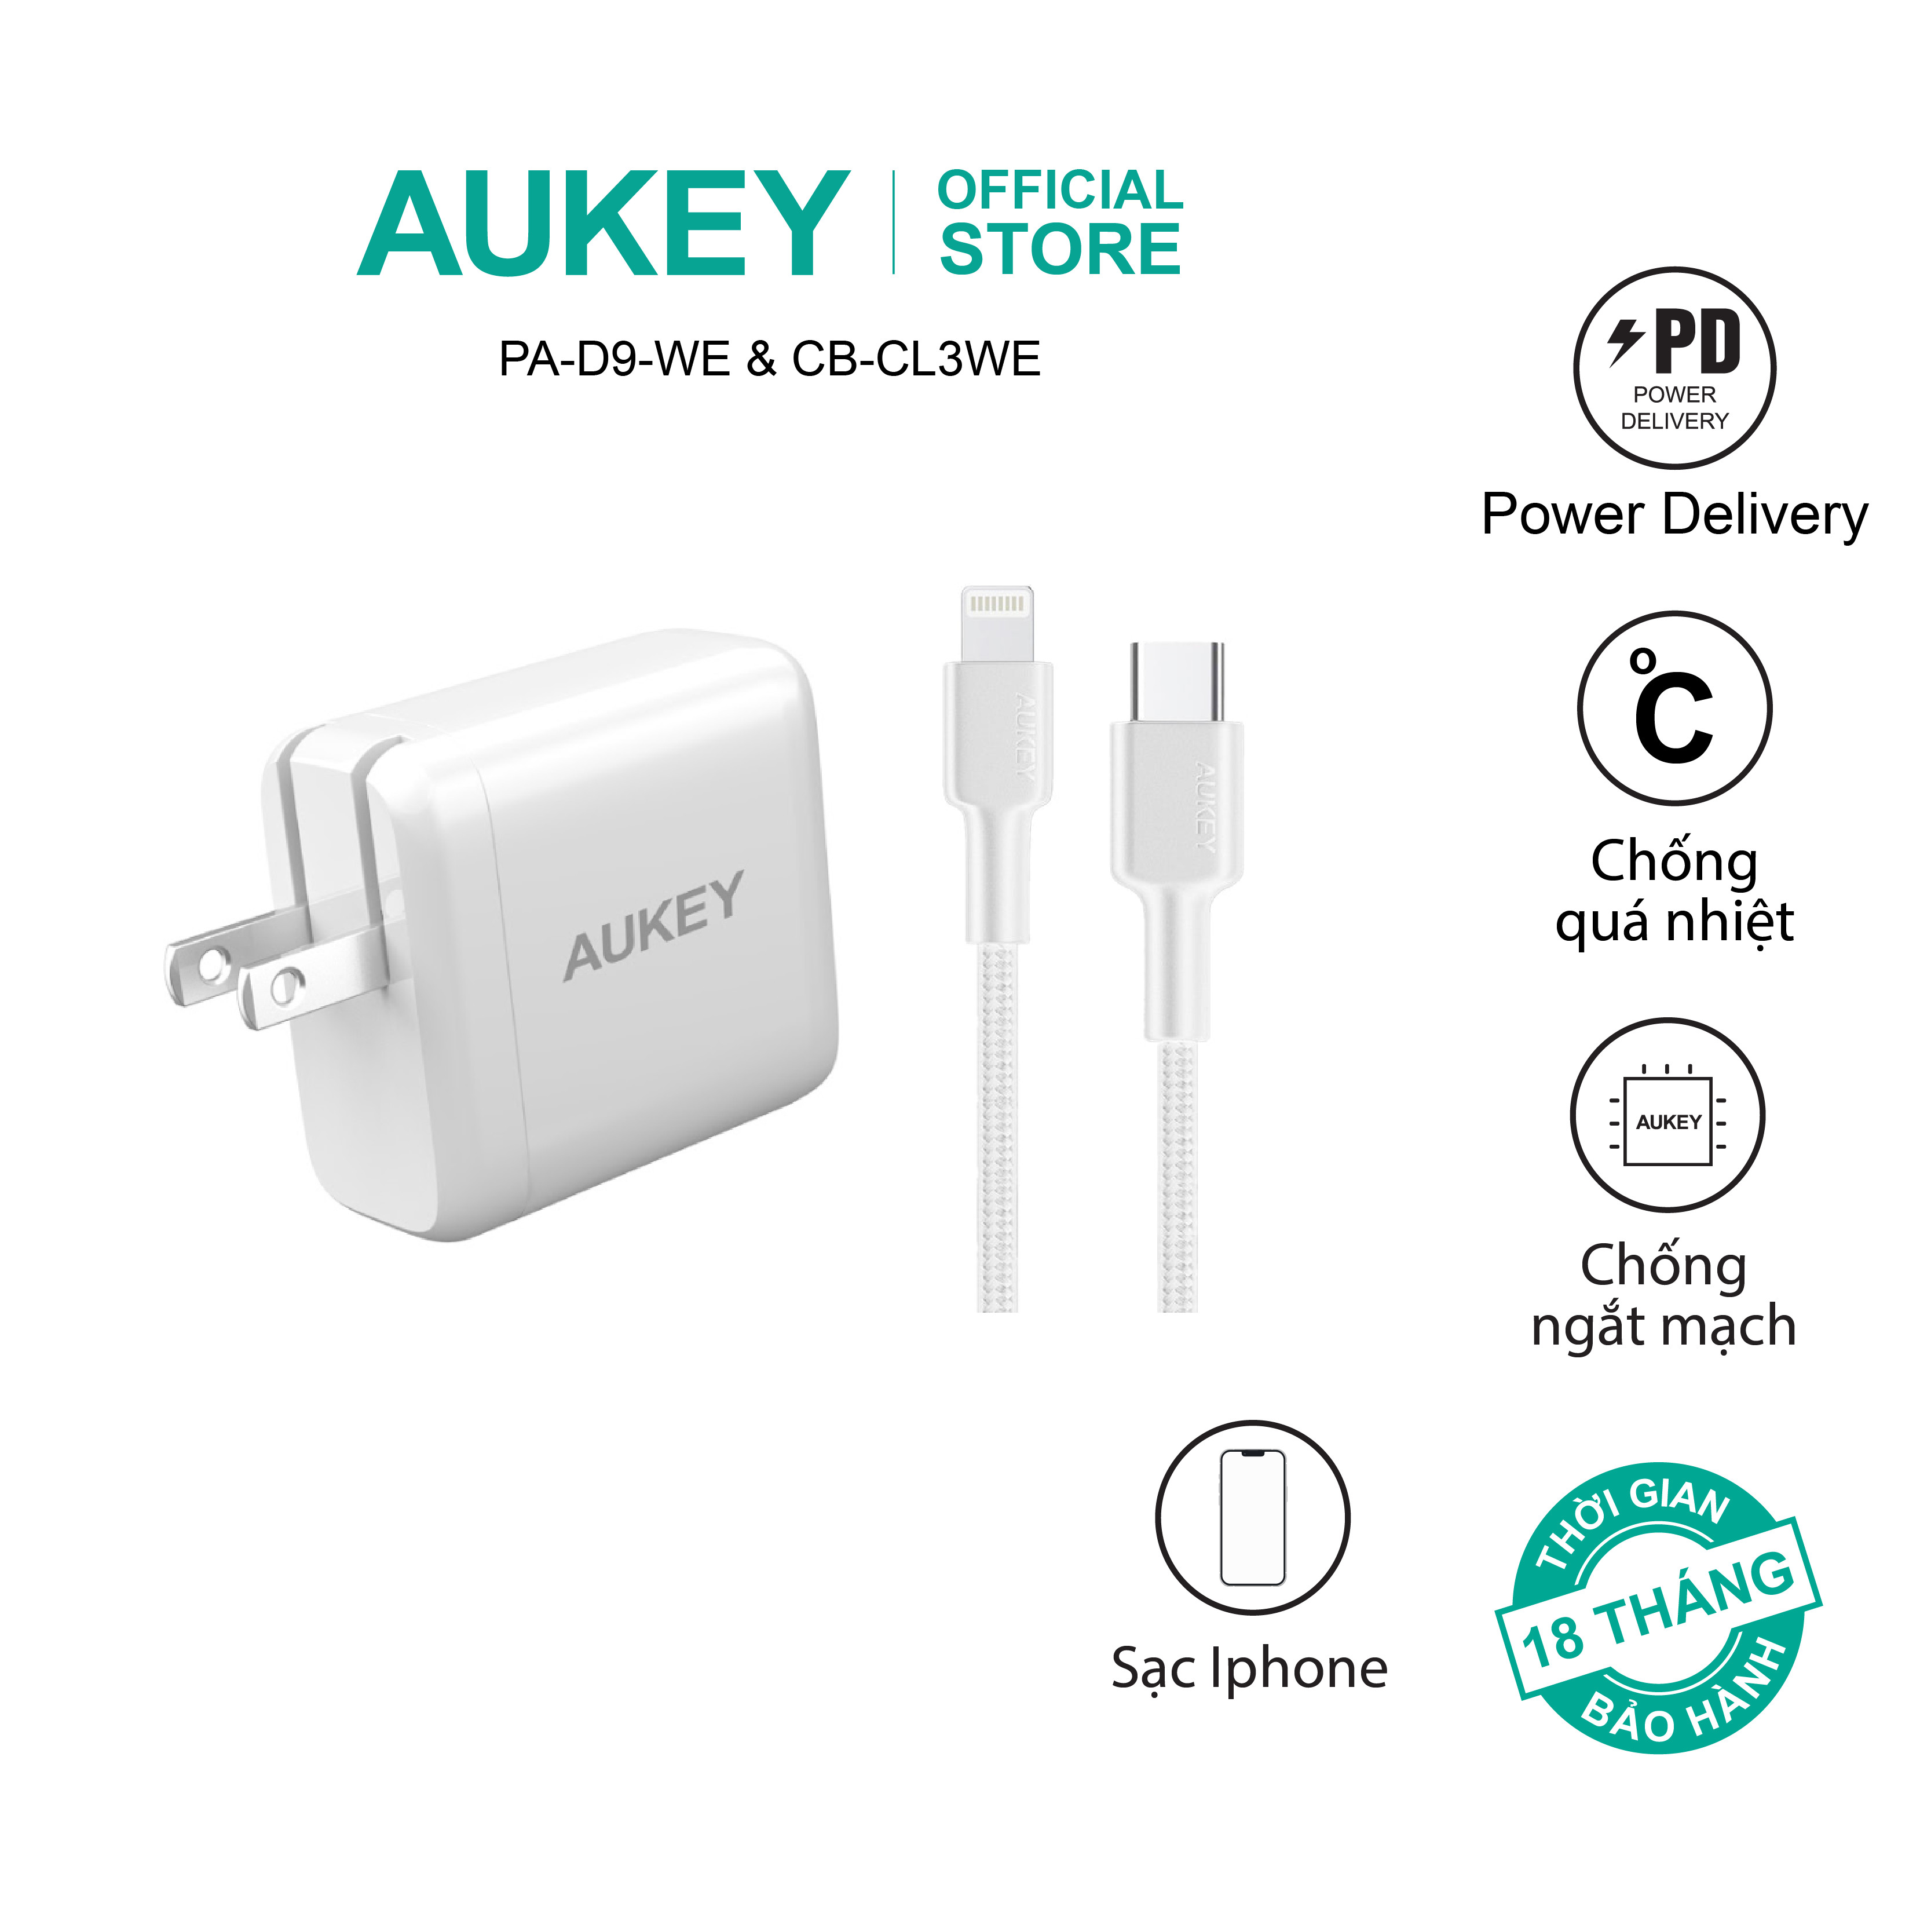 Combo bộ sạc Aukey cho Iphone củ sạc PA-D9 và cáp sạc CB-CL3